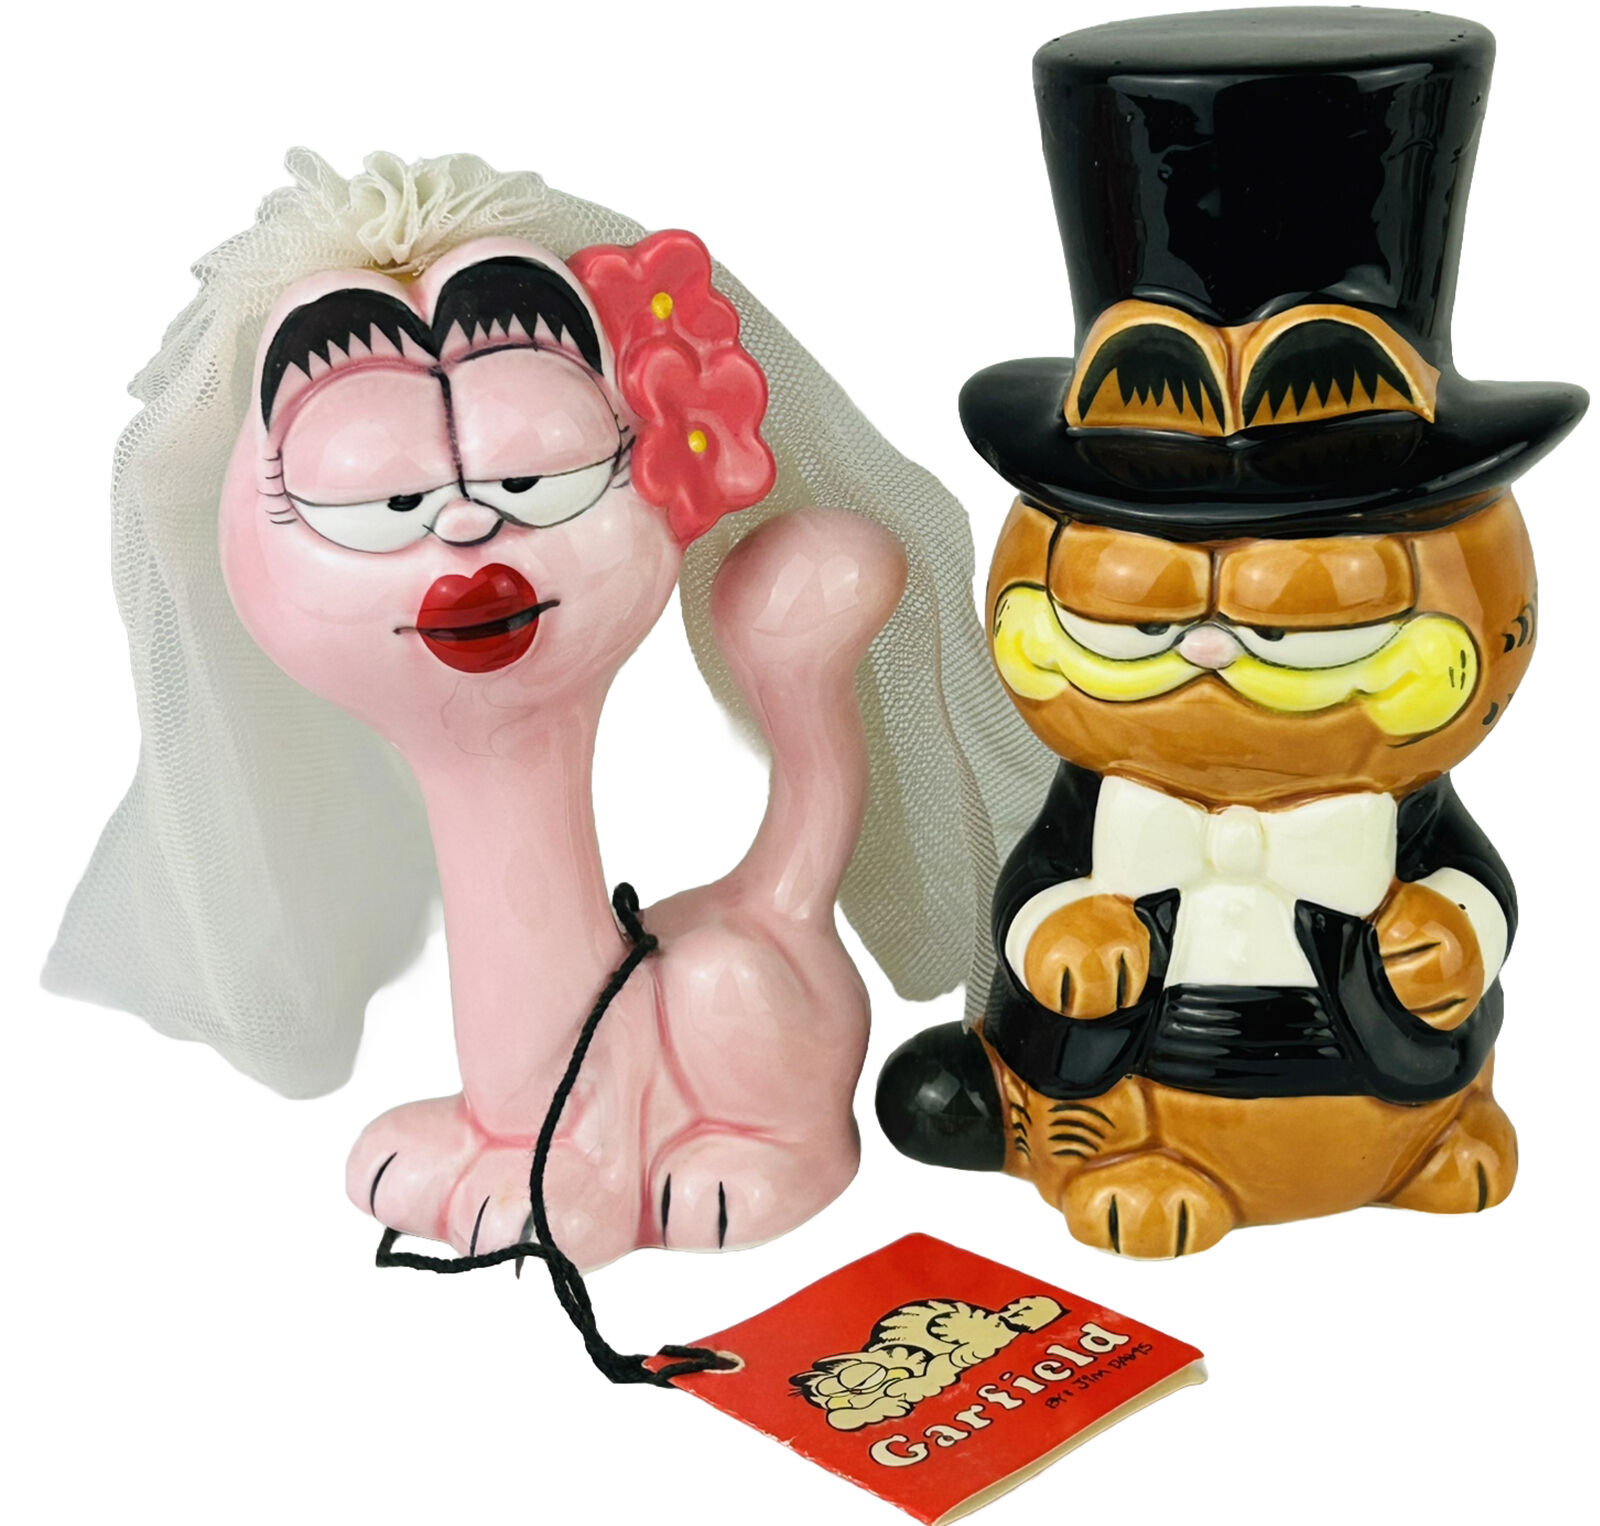 Vintage Garfield Arlene Wedding Cake Topper Figures Enesco Ceramic bride groom